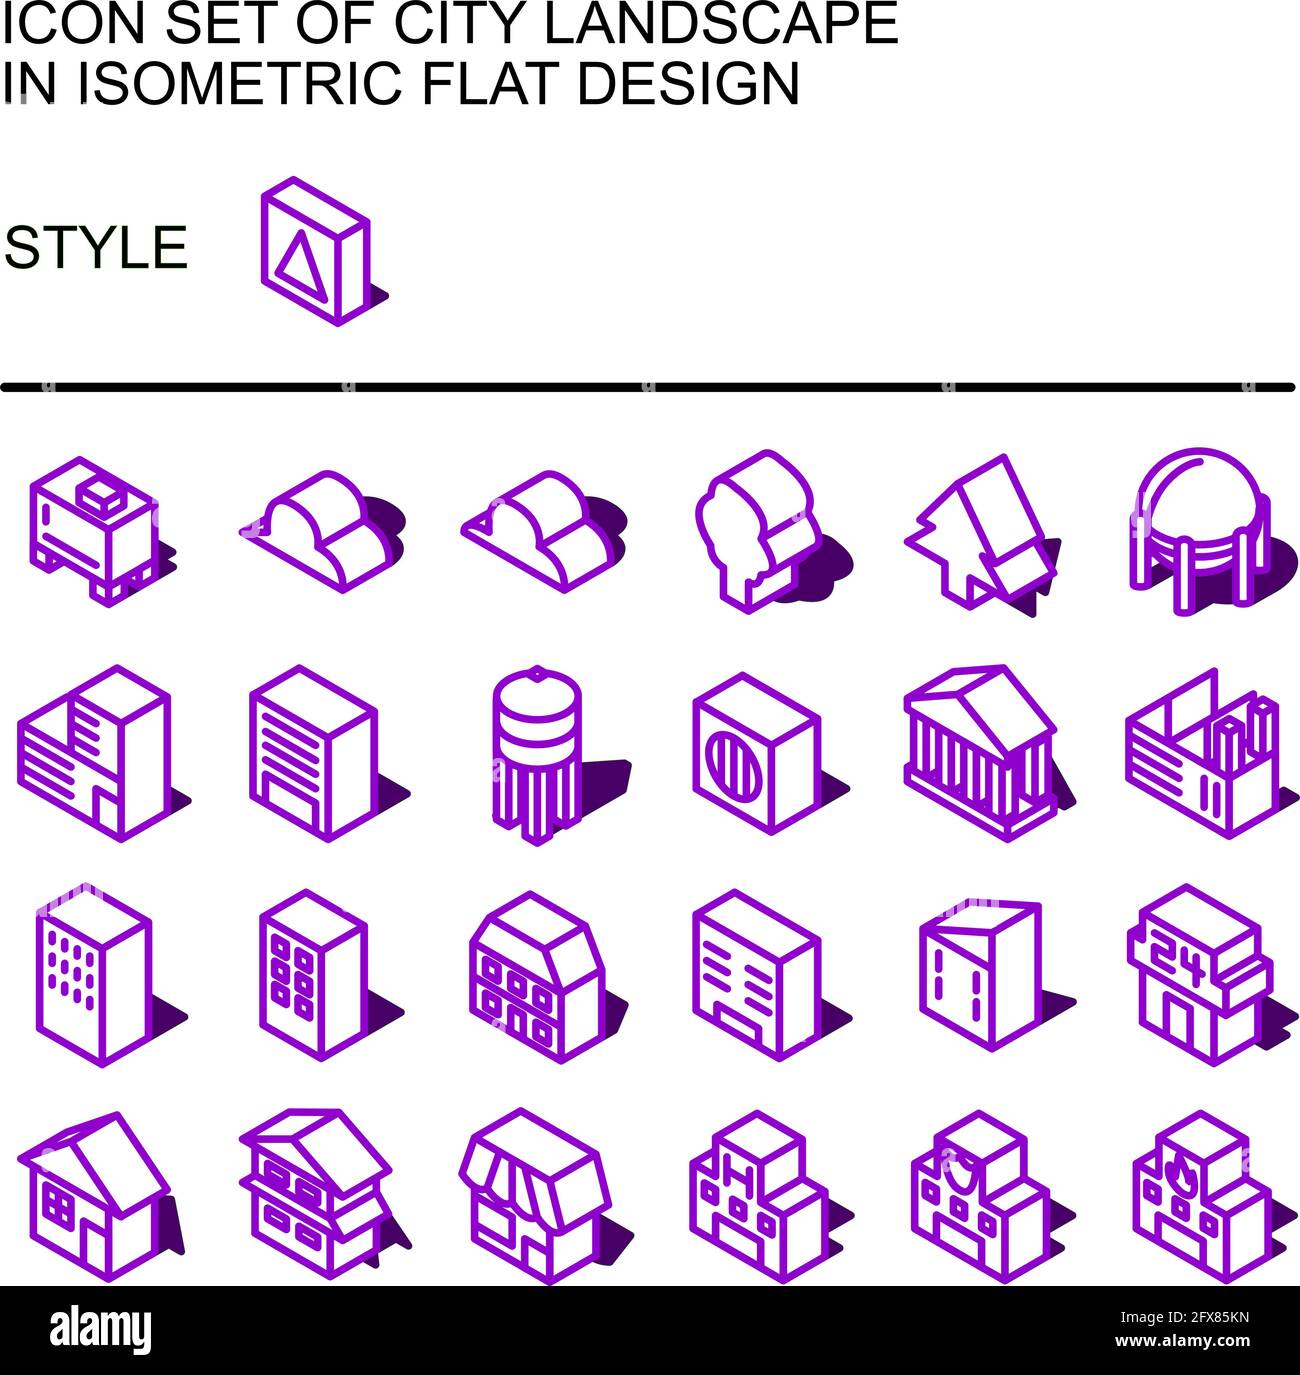 Icona del paesaggio urbano in un design piatto isometrico con linee viola, riempimenti bianchi, forma di un'ombra. Illustrazione Vettoriale